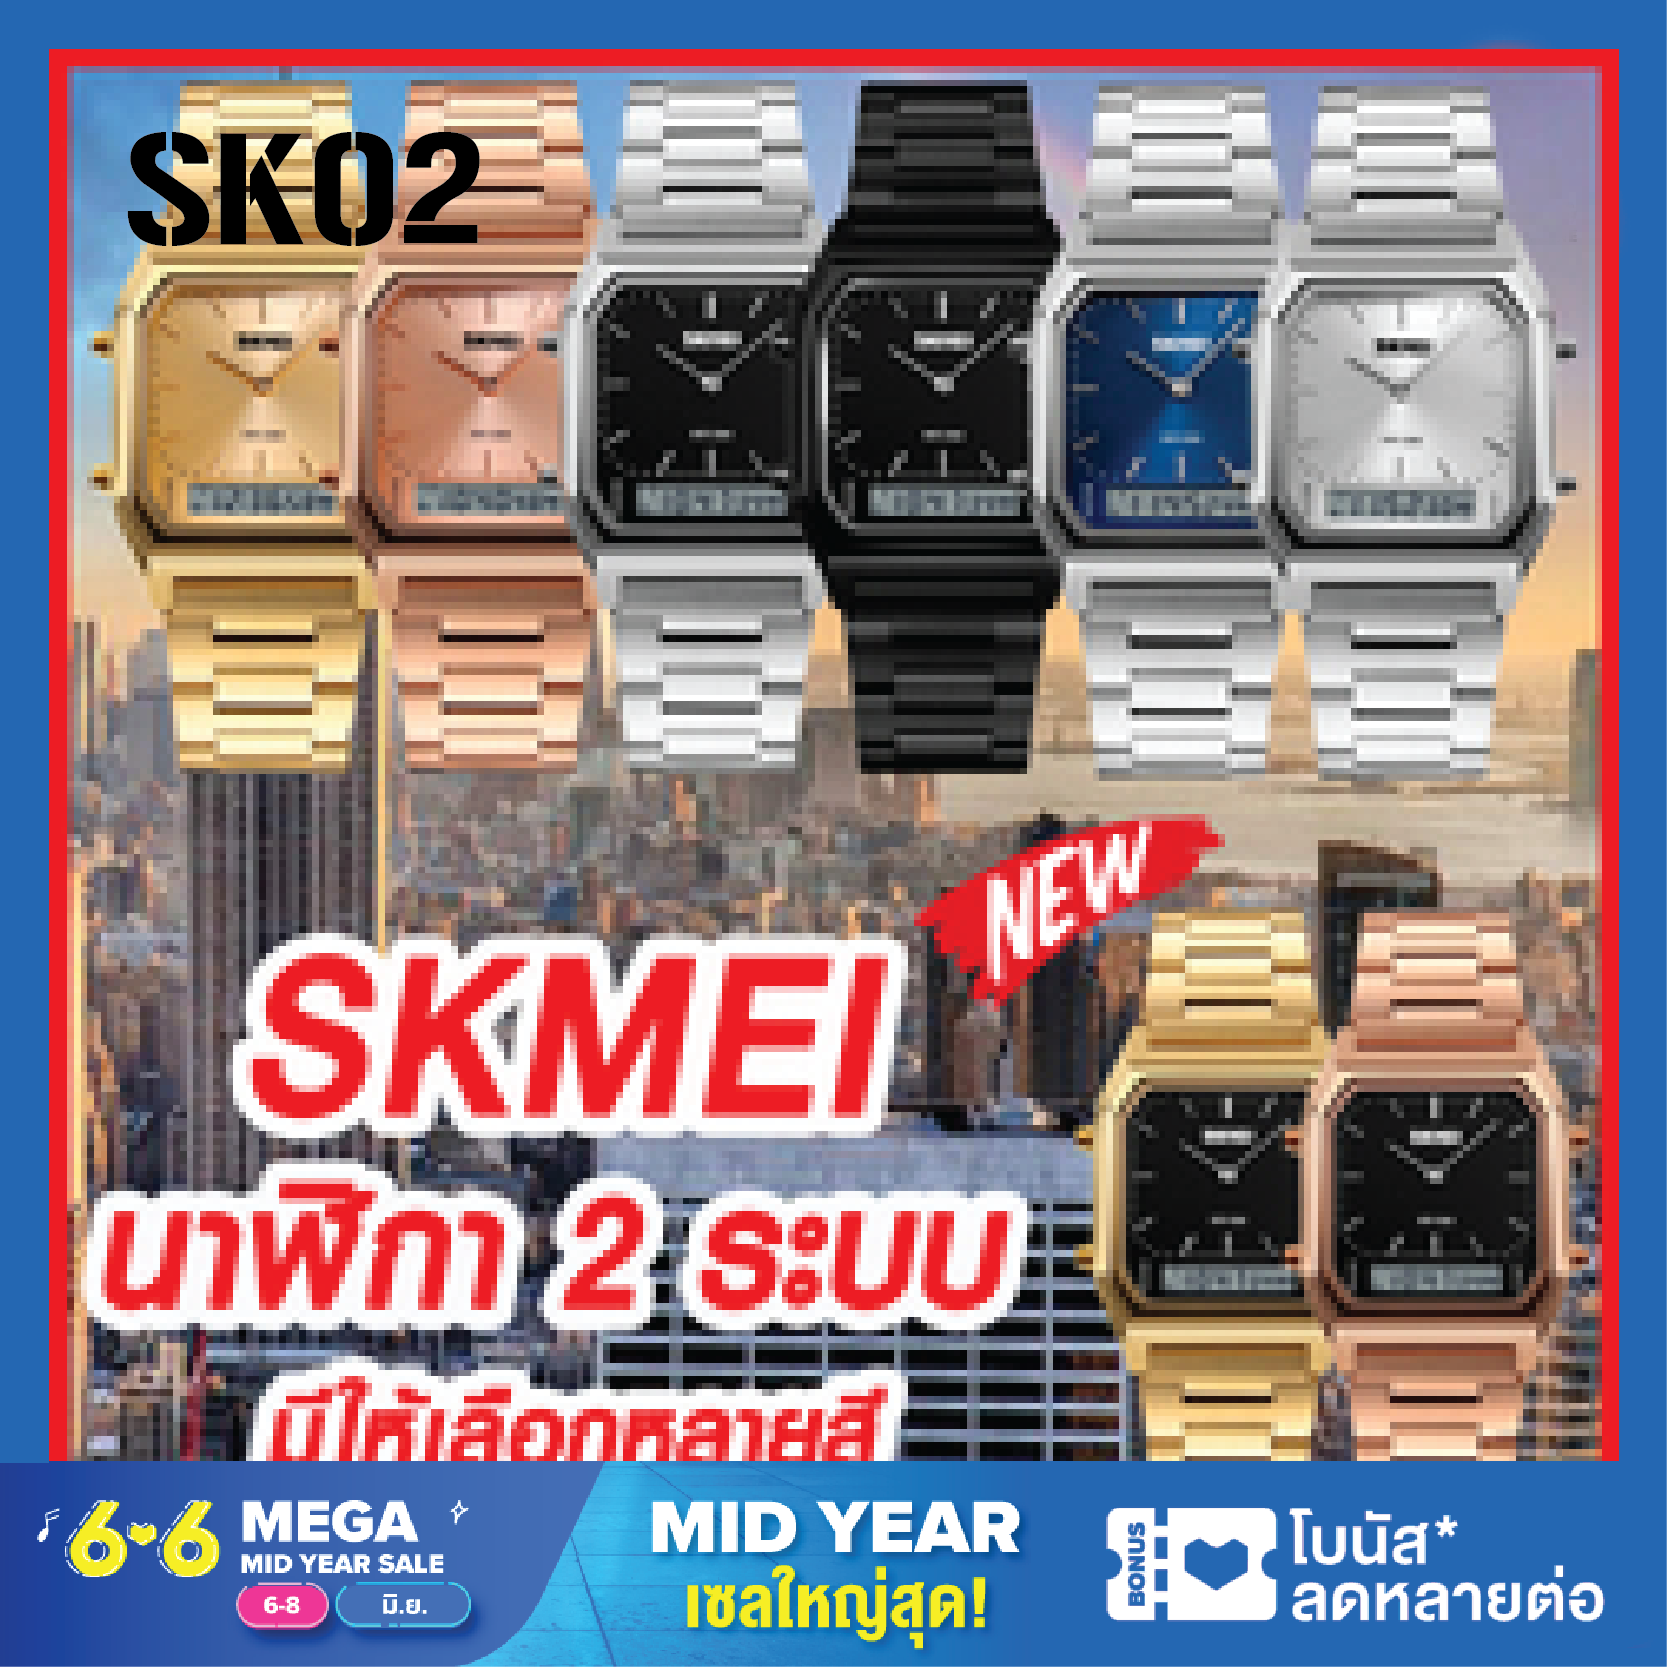 (พร้อมส่งจากไทย) ใหม่ 2020 SKMEI 1220 นาฬิกา นาฬิกาข้อมือ นาฬิกาข้อมือผู้หญิง นาฬิกาผู้ชาย รุ่นใหม่ล่าสุด ไฟ LED 2ระบบ สุดฮิต ของแท้ 100% ราคาถูก นาฬิกากันน้ำ ฮิตสุดๆ รุ่น SK02